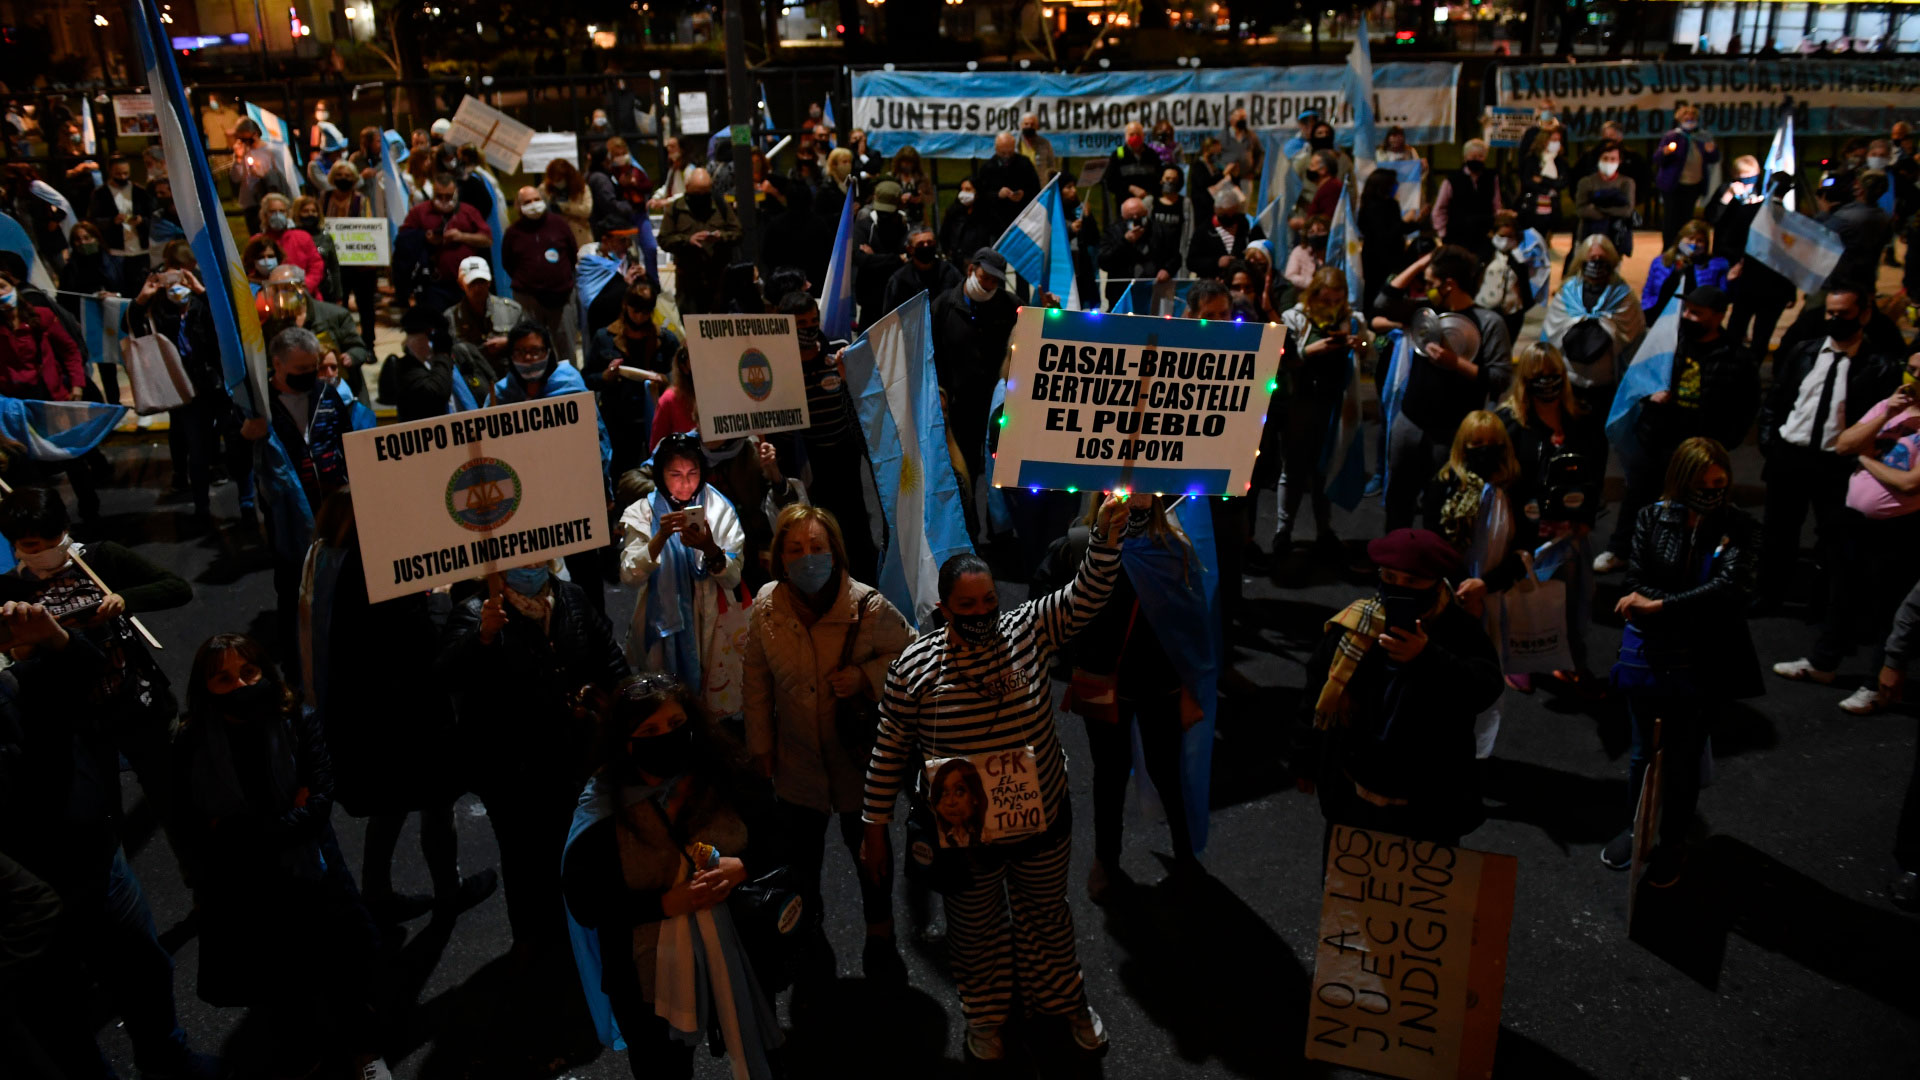 Muchos carteles y consignas estaban dirigidos contra la vicepresidenta Cristina Kirchner (Maximiliano Luna)